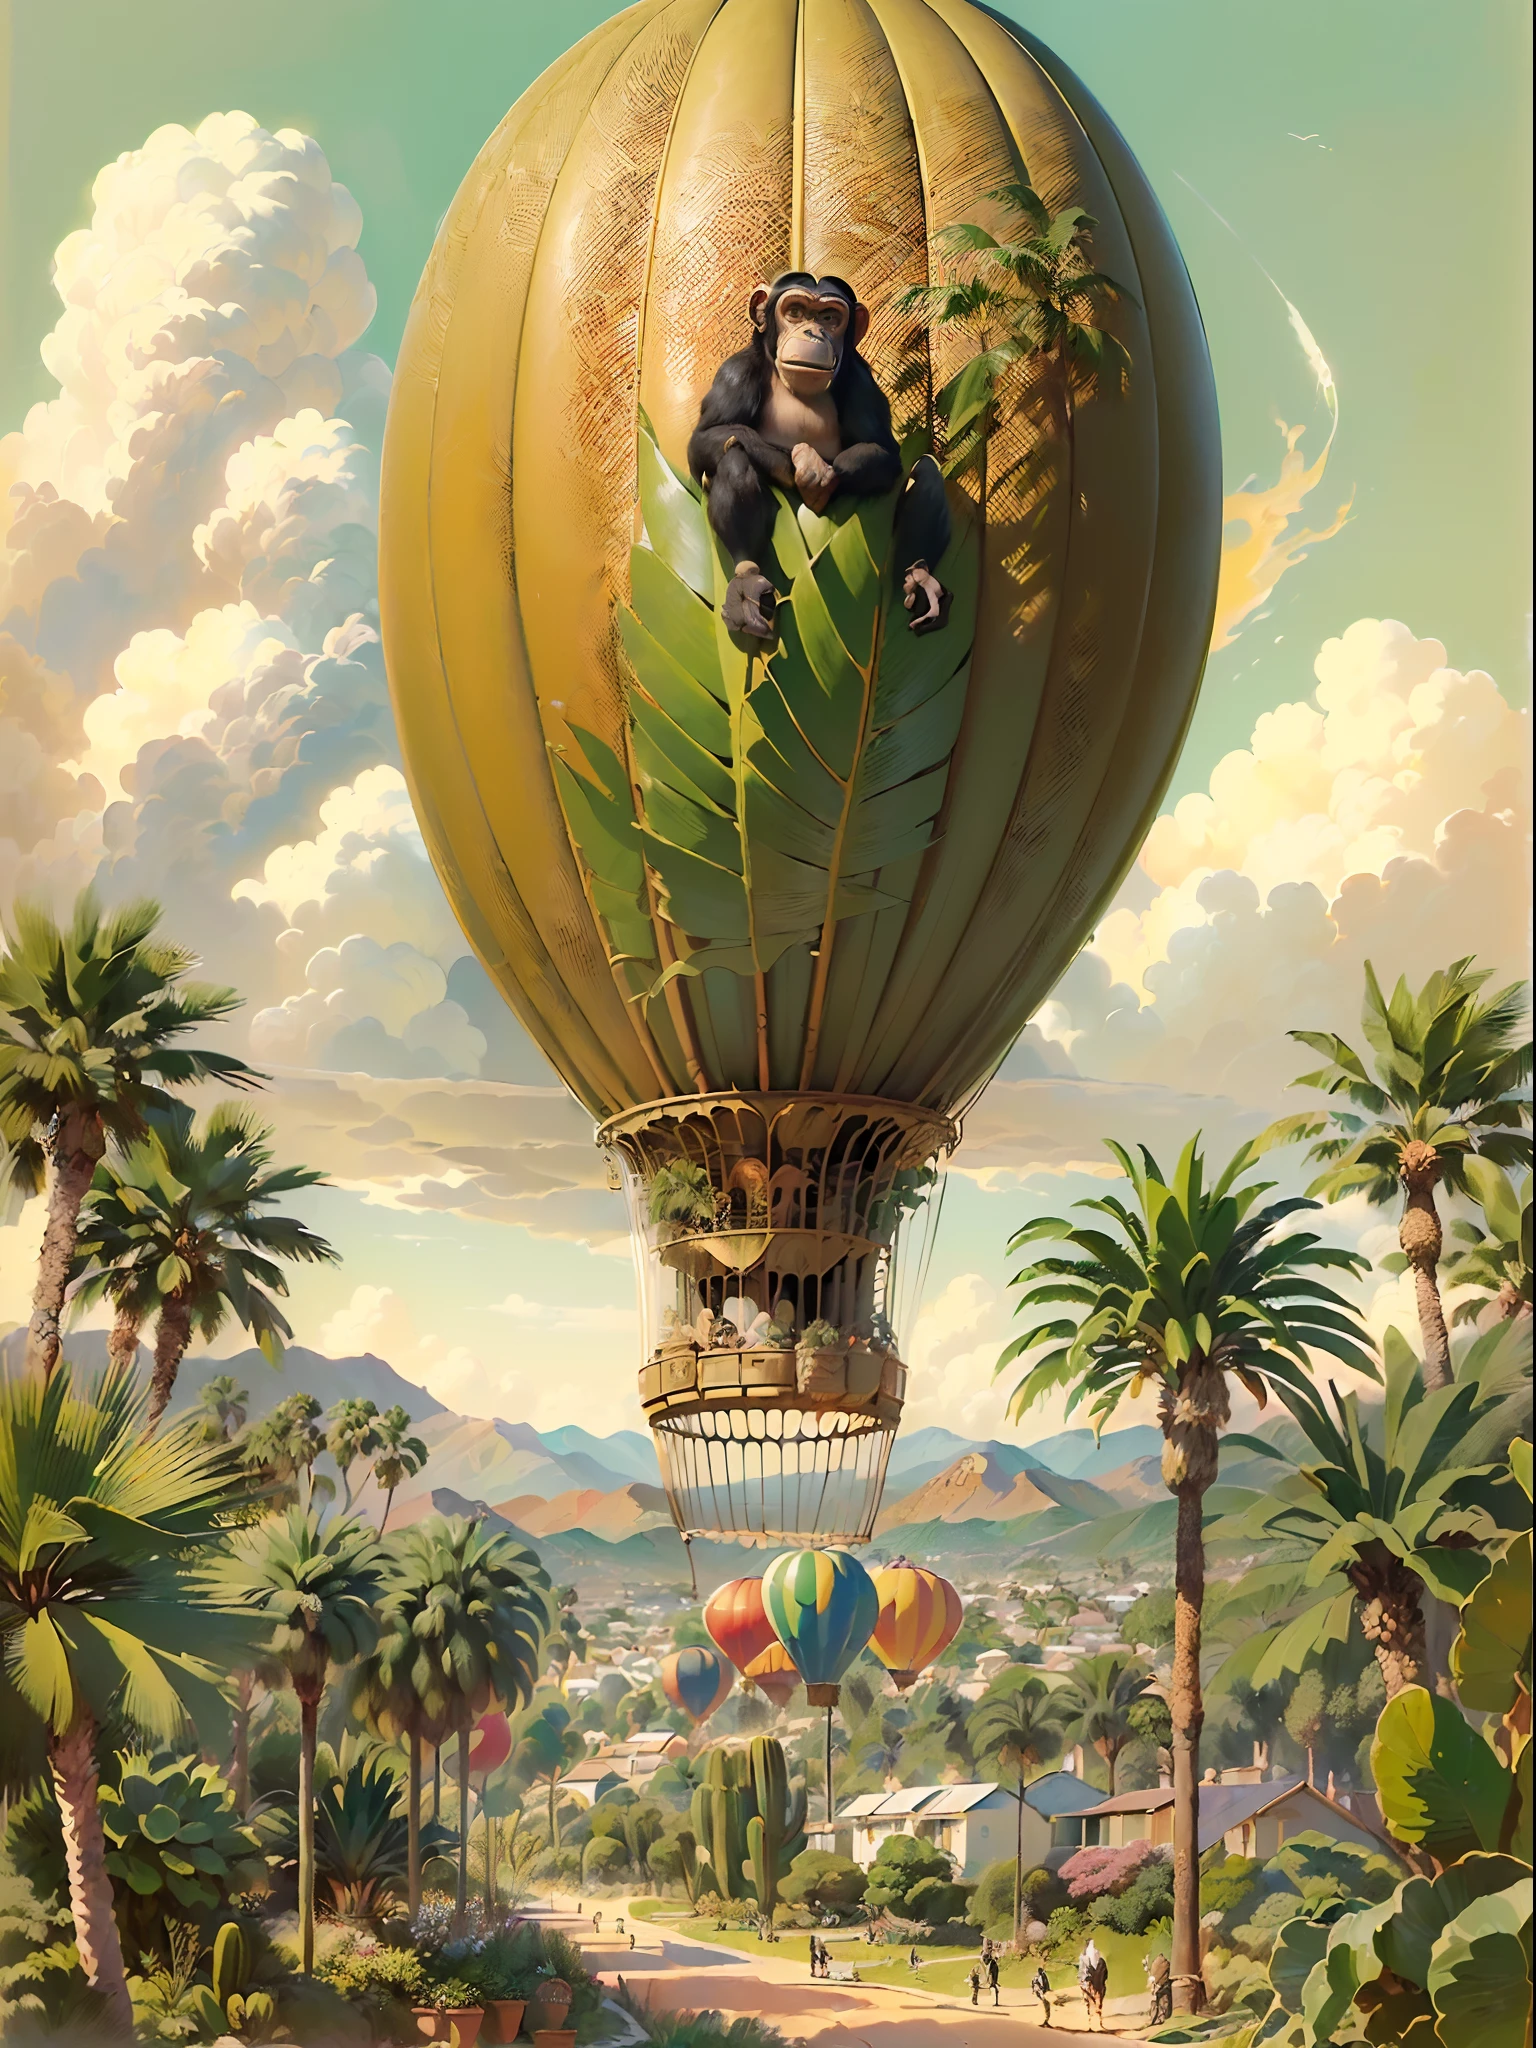 (((melhor qualidade)),, Uma ilustração com um dirigível em forma de banana voando sobre palmeiras Phoenix canariensis (((dirigível com cabeça de chimpanzé)),,,(((muitas palmeiras phoenix canariensis))) ,,, Balões de vapor quente, Céu com nuvens fofas,, ilustração de foco nítido, hiper-realismo, ilustração finamente detalhada, inspirado em Charles W. Bartlett, ilustração científica, campo de profundidade, cauda de fluxo longo, ilustração colorida, Adepto de Silvergill, gravura em litografia colorida, por Charles W.. Bartlett, uma ilustração hiper-realista de, Jules Julien, Tiago Collinson, por Tim Hildebrandt